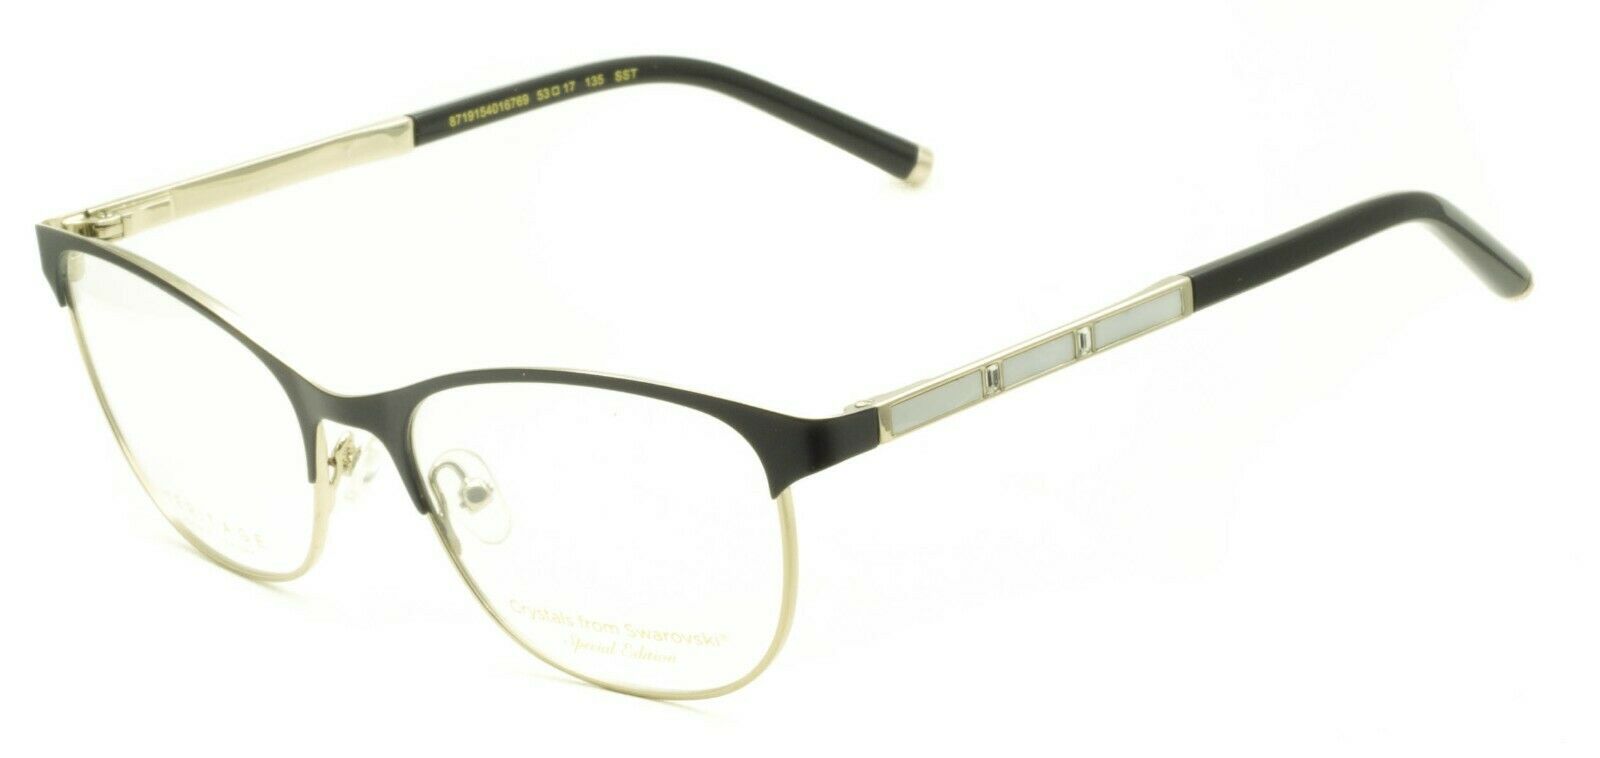 HERITAGE Iconic Luxury HECF05 BD Eyewear FRAMES Eyeglasses RX Optical Glasses